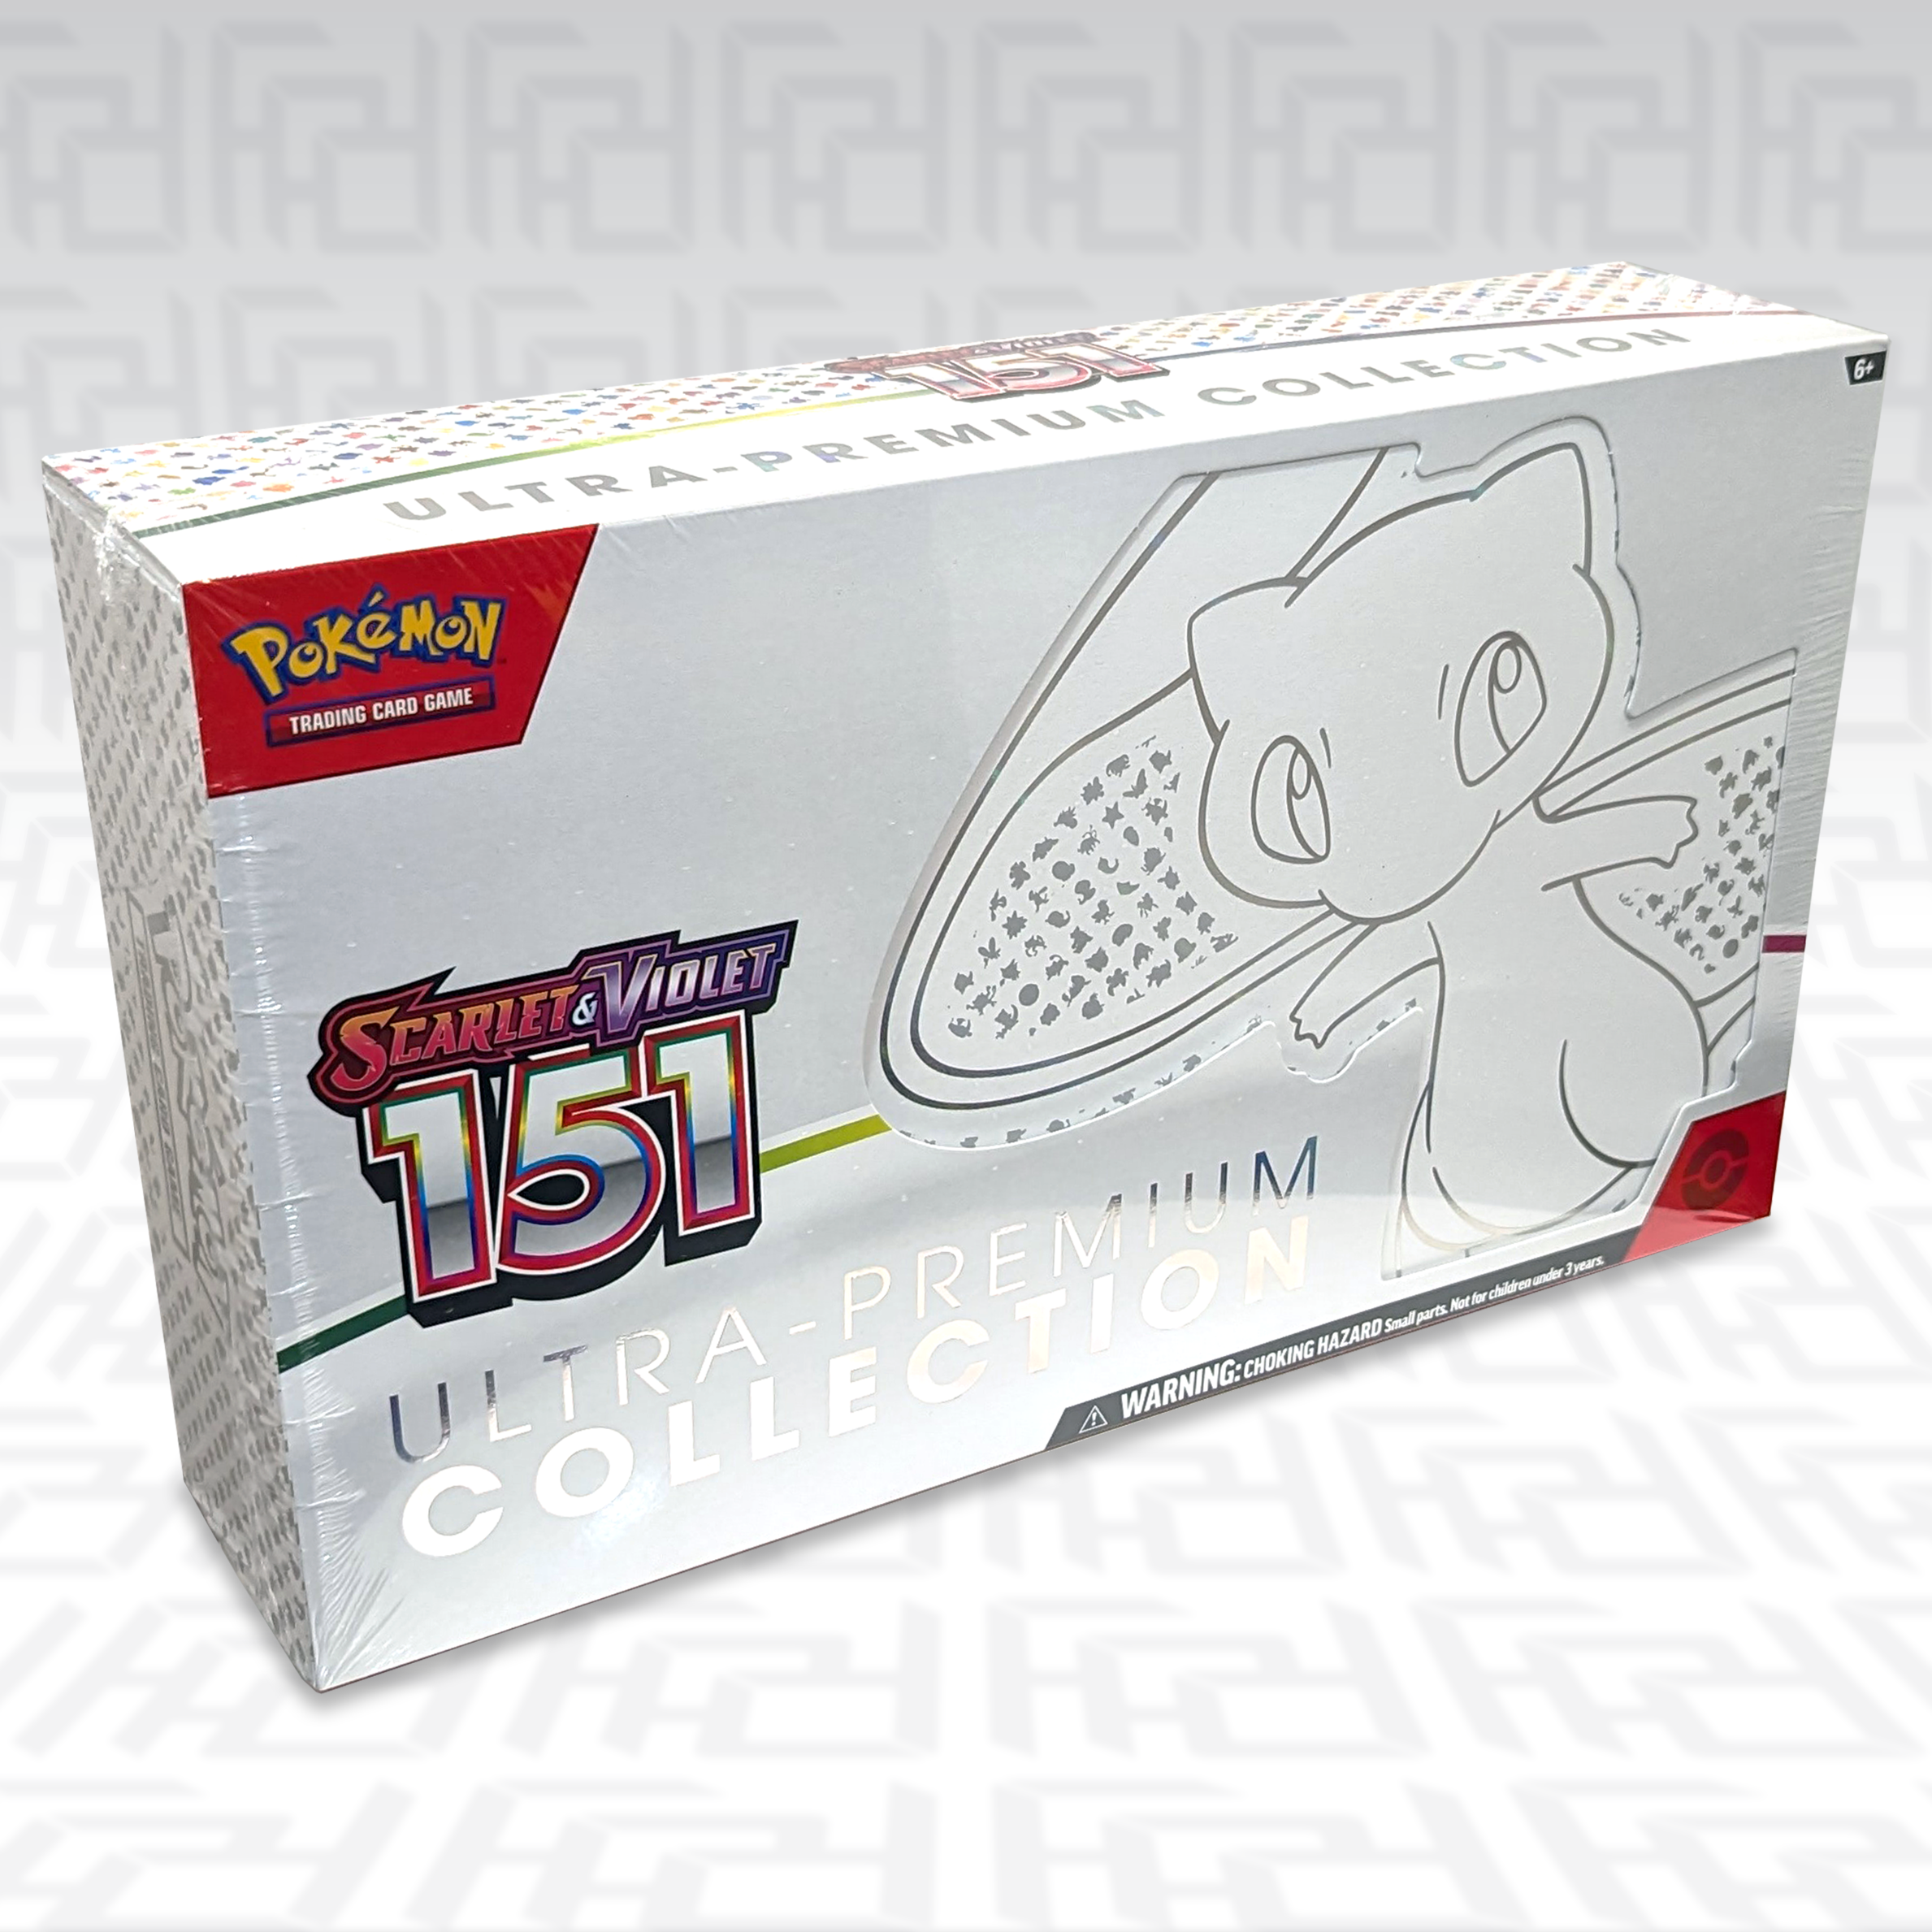 Pokémon - Coffret Ultra Premium Mew - Écarlate et Violet EV3.5 FR - POKEMON /ETB/COFFRETS - PIKA COMPANY